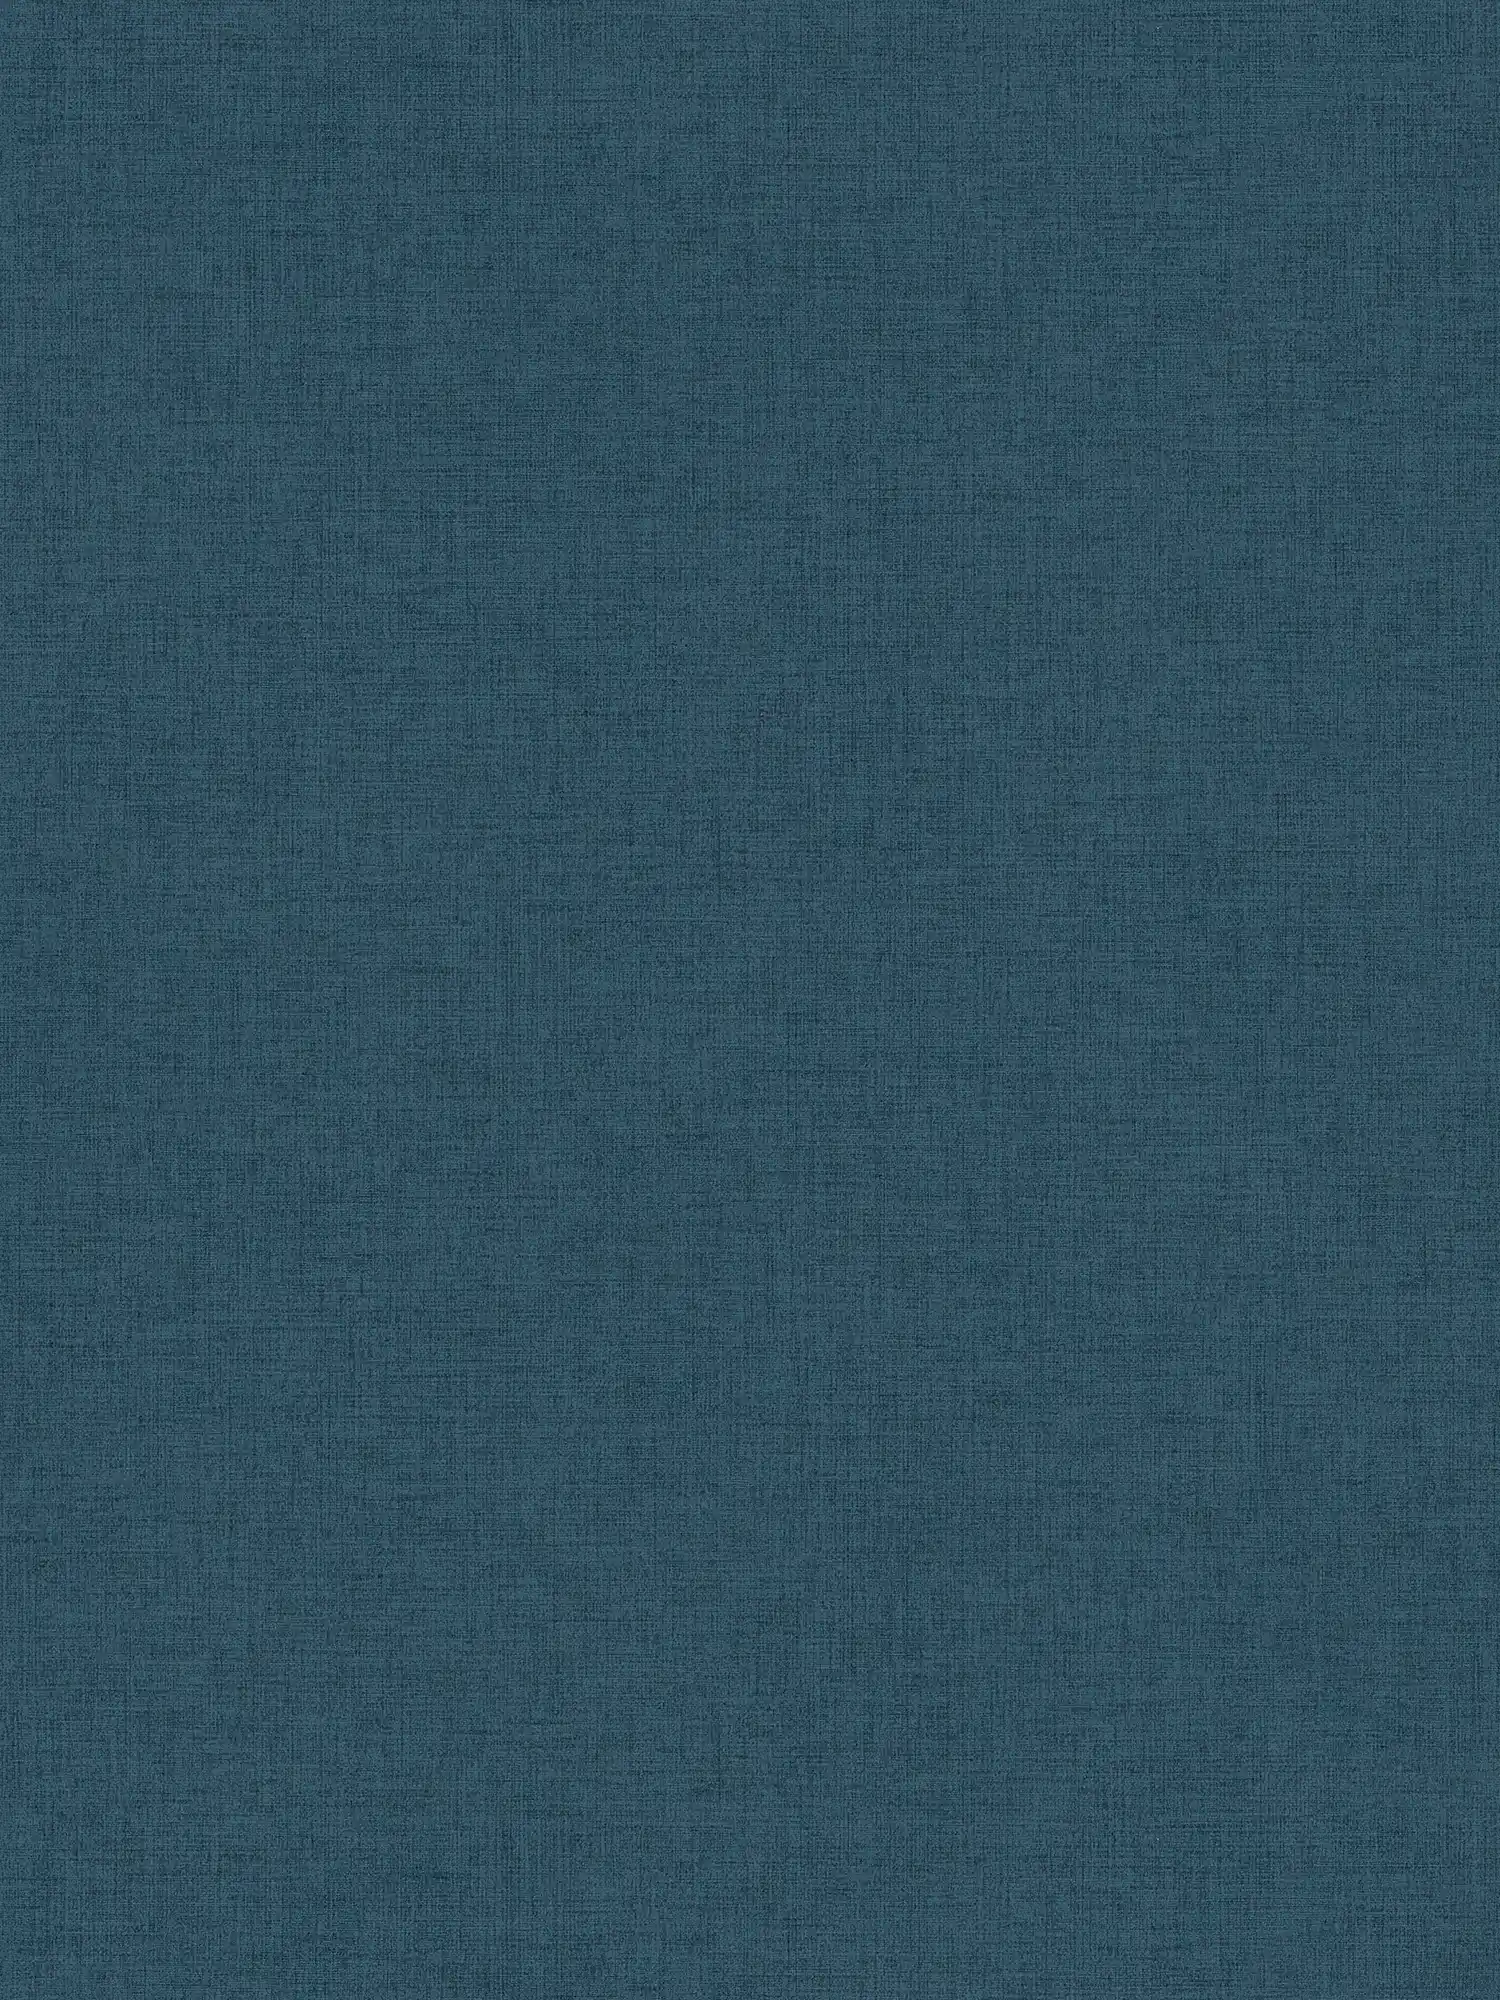 Papel pintado no tejido con aspecto de lino en azul petróleo
